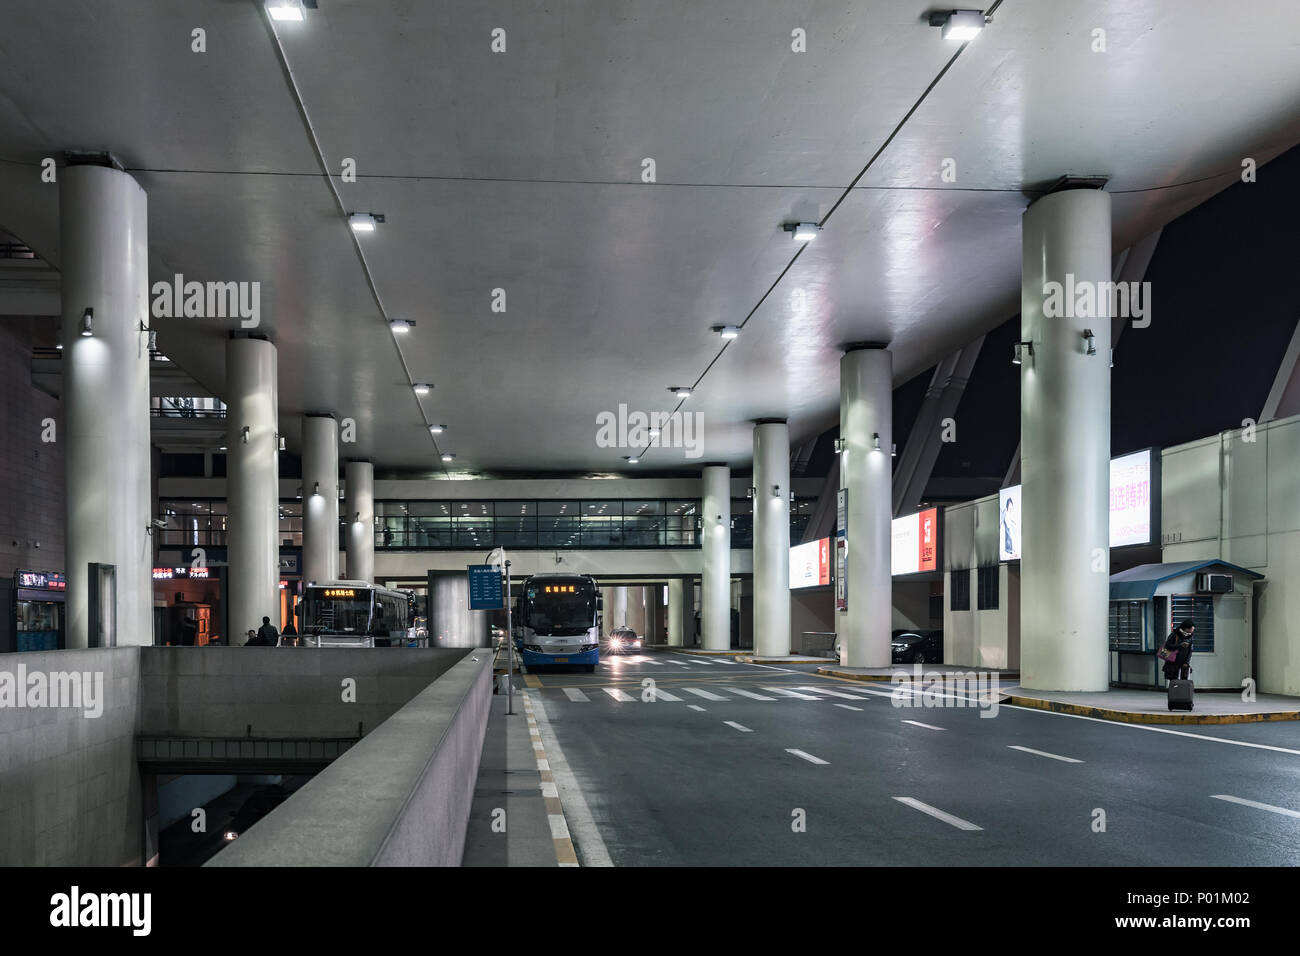 Shanghai, China - 5 de diciembre de 2014: la terminal de autobuses del aeropuerto internacional de Pudong de Shangai Foto de stock